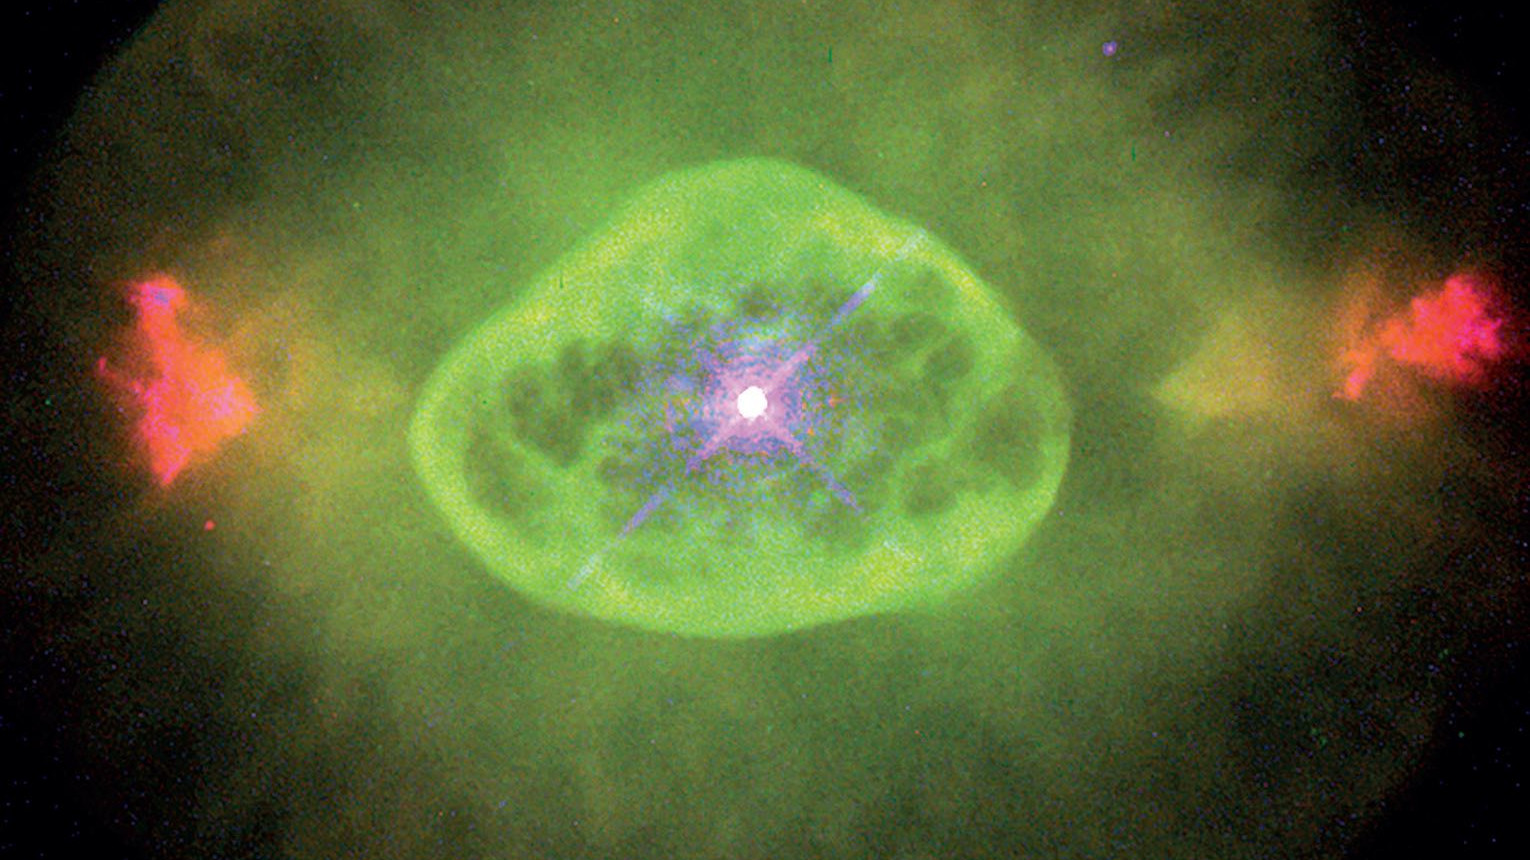 La nebulosa planetaria NGC 6826 vista por el Hubble. B. Balick (Universidad de Washington), J. Alexander (Universidad de Washington), A. Hajian (Observatorio Naval de los EE. UU.), Y. Terzian (Universidad de Cornell). M. Perinotto (Universidad de  Florencia), P. Patriarchi (Observatorio Arcetri) y NASA/ESA